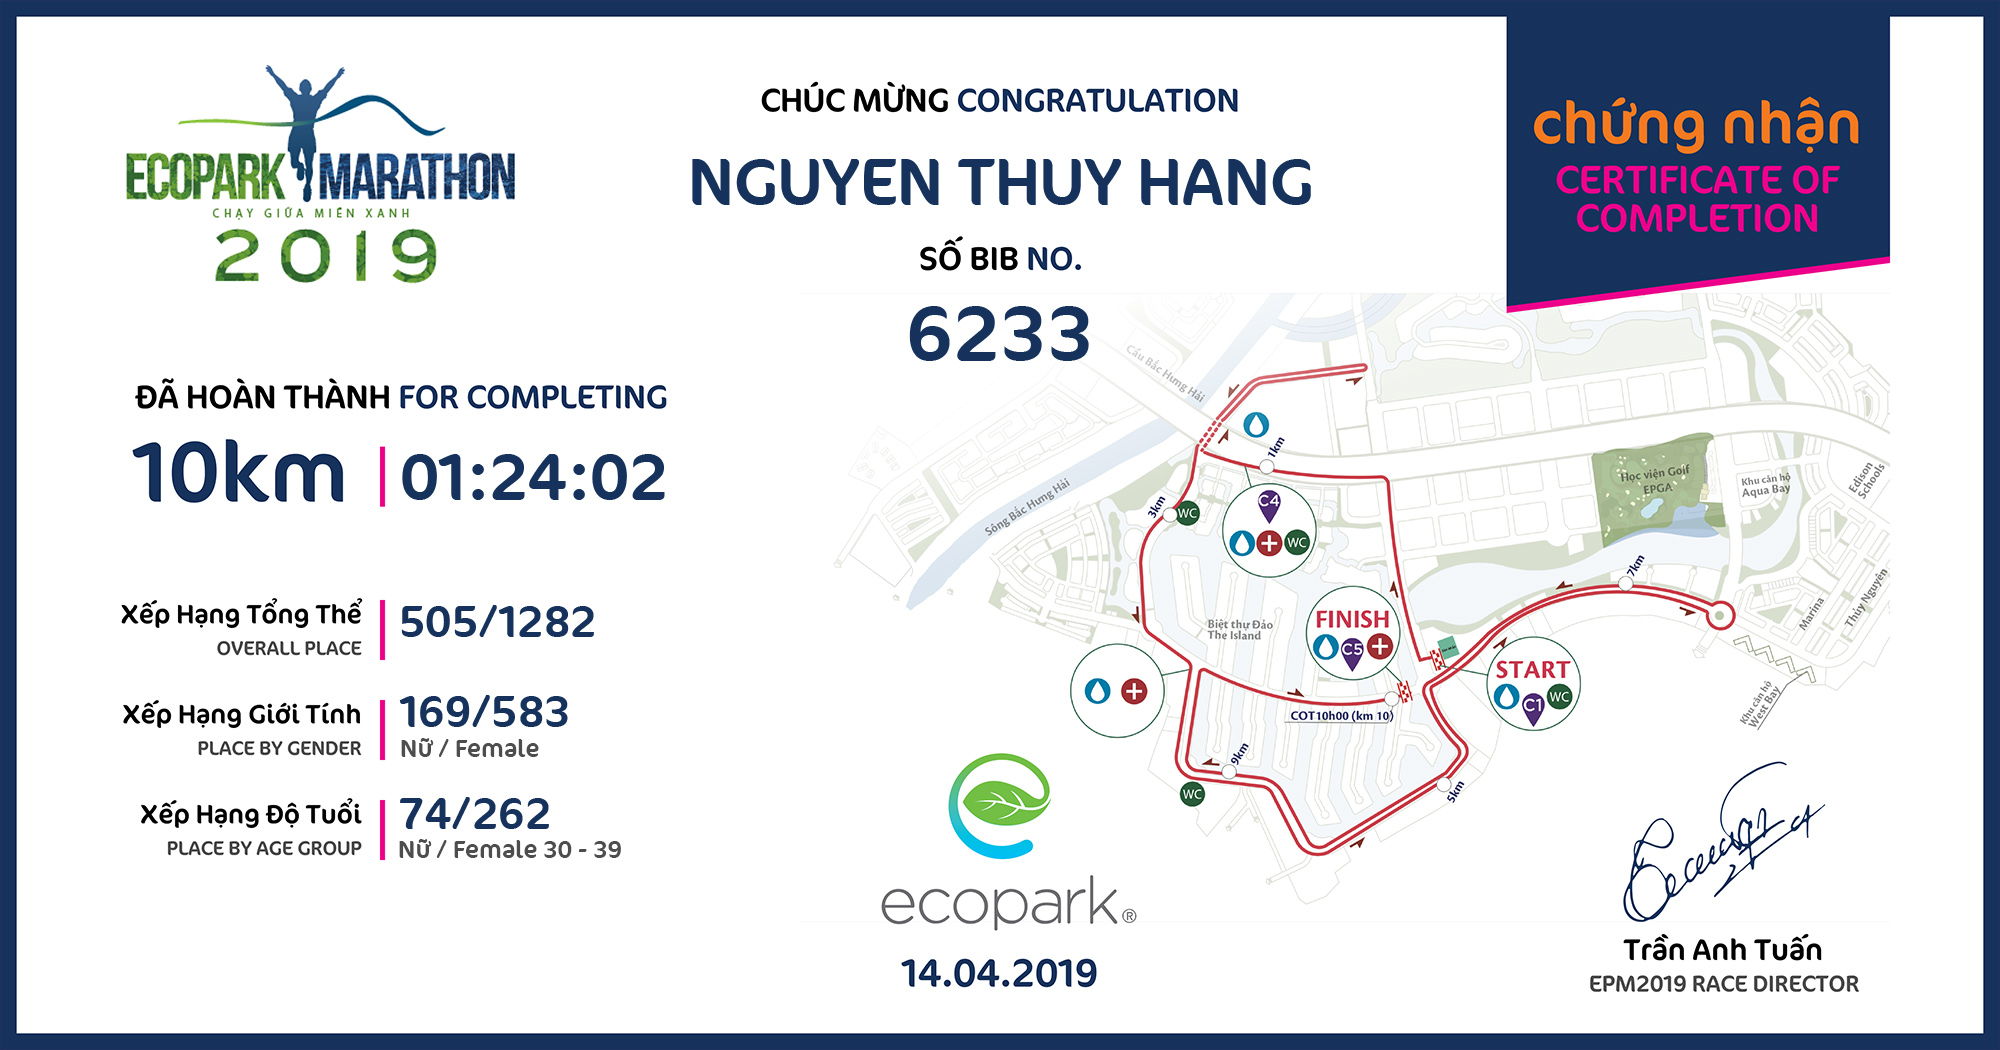 6233 - Nguyen Thuy Hang